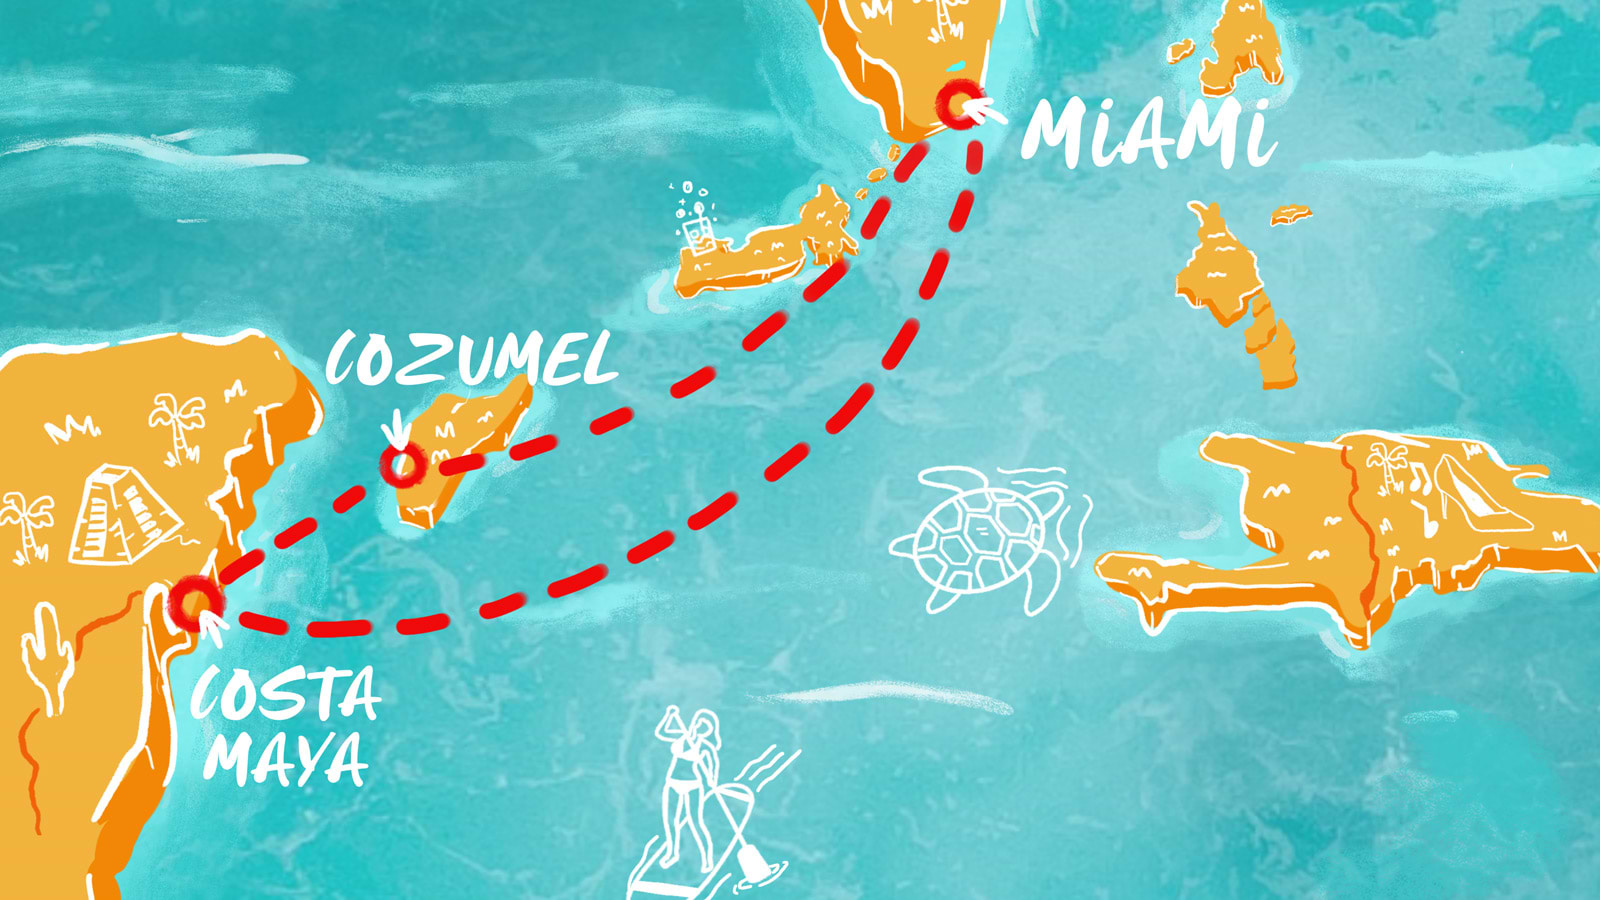 Costa Maya & Cozumel Charm itinerary map